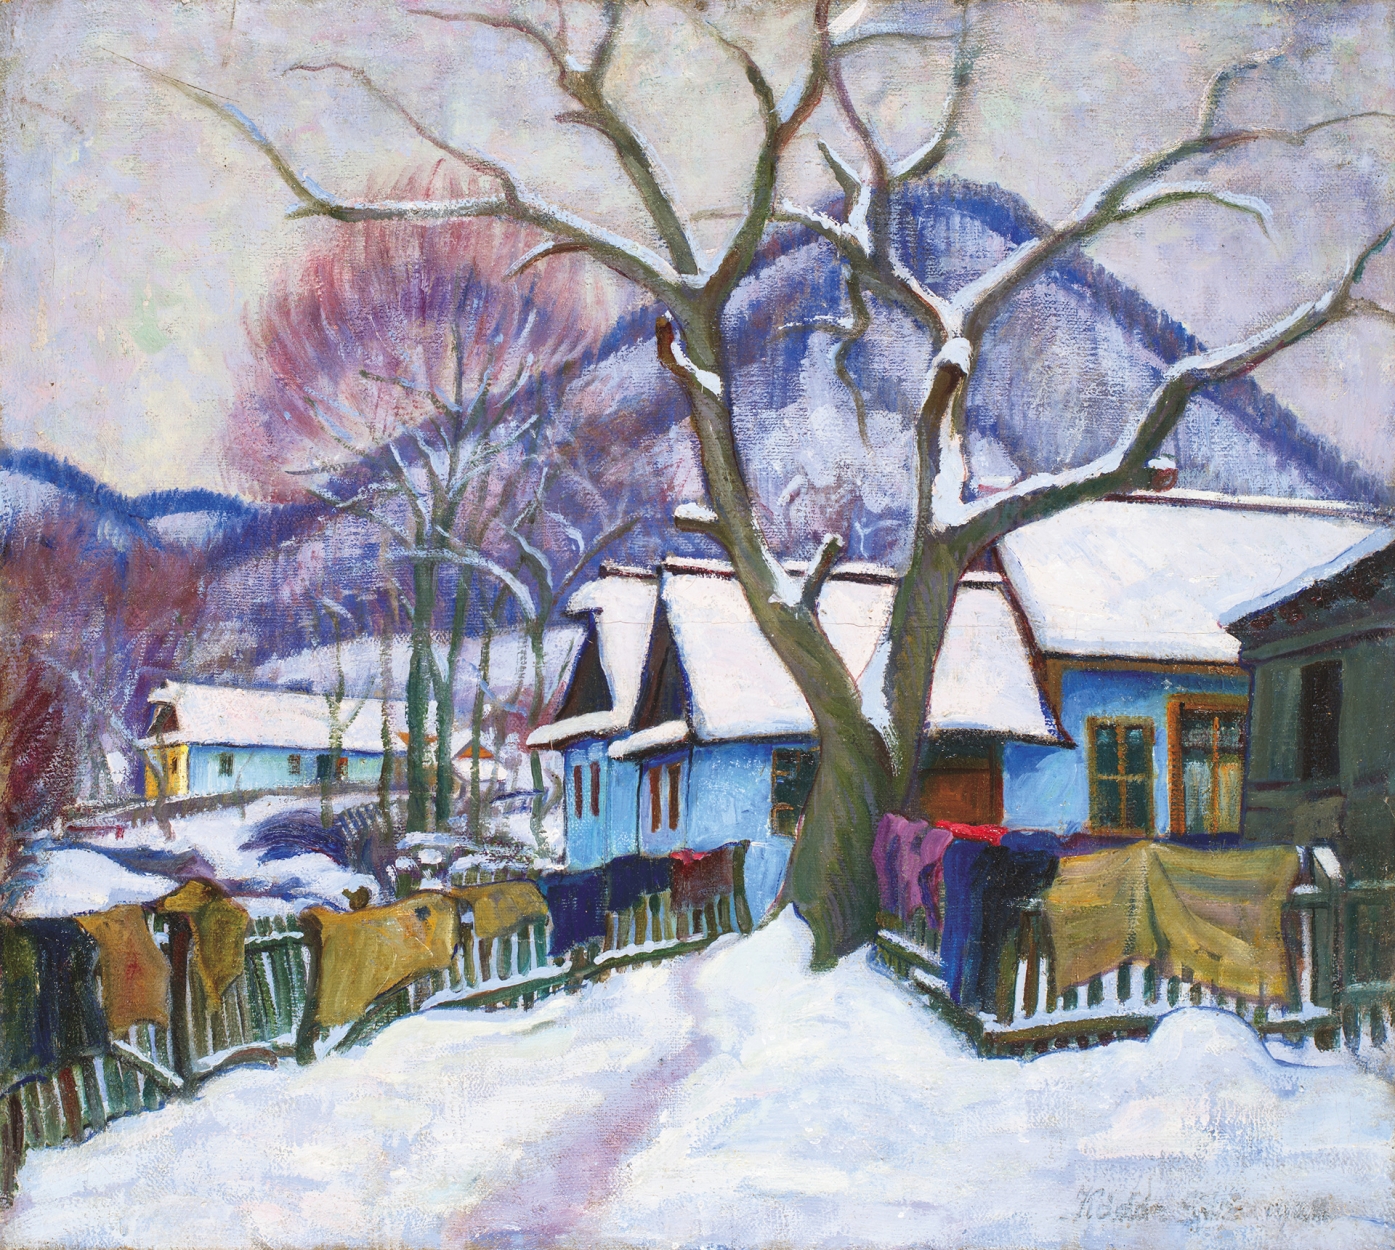 Kádár Géza (1878-1952) Sparkling Winter, 1928